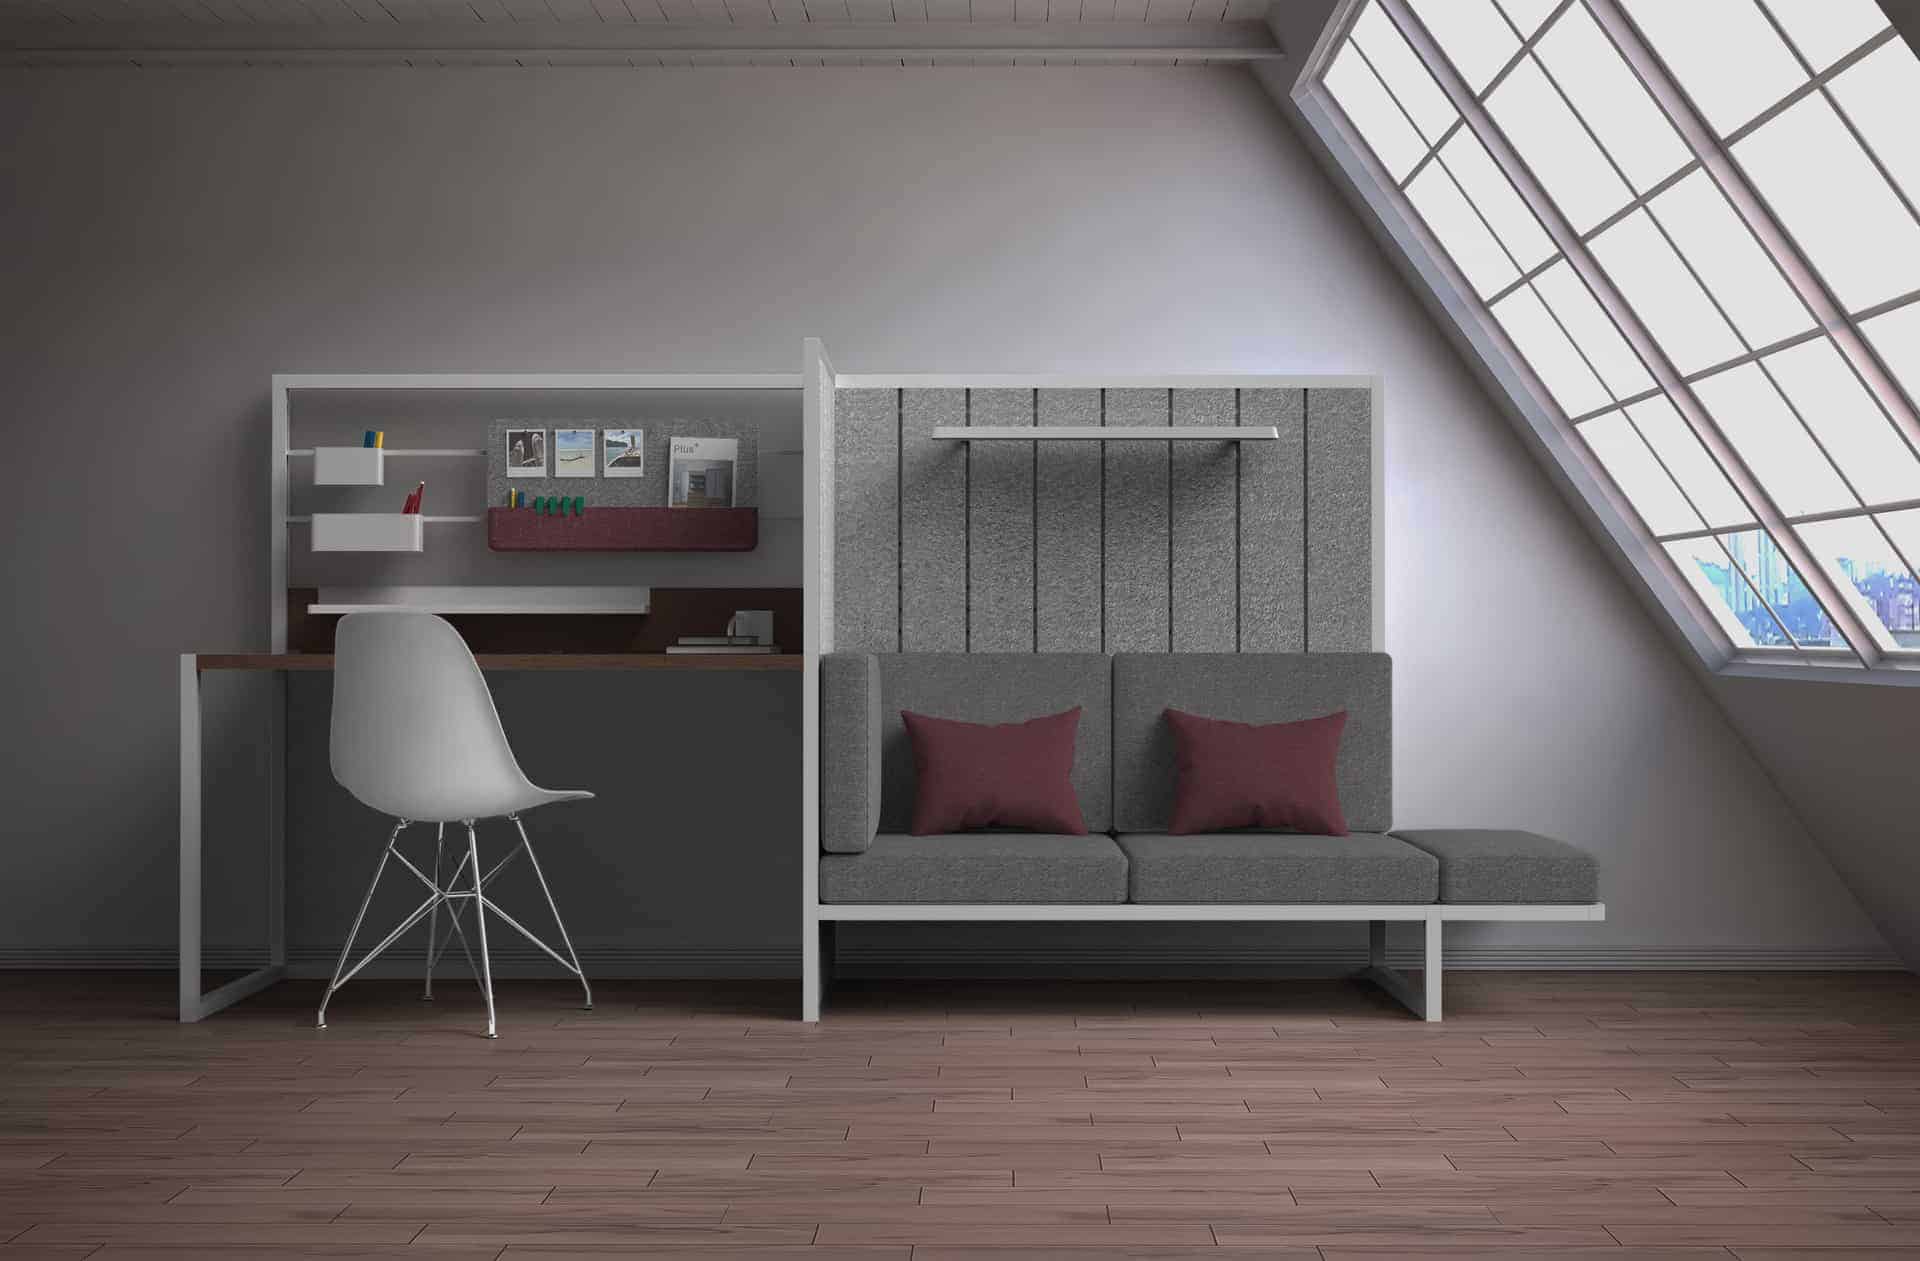 Plus+ Modular Furniture System